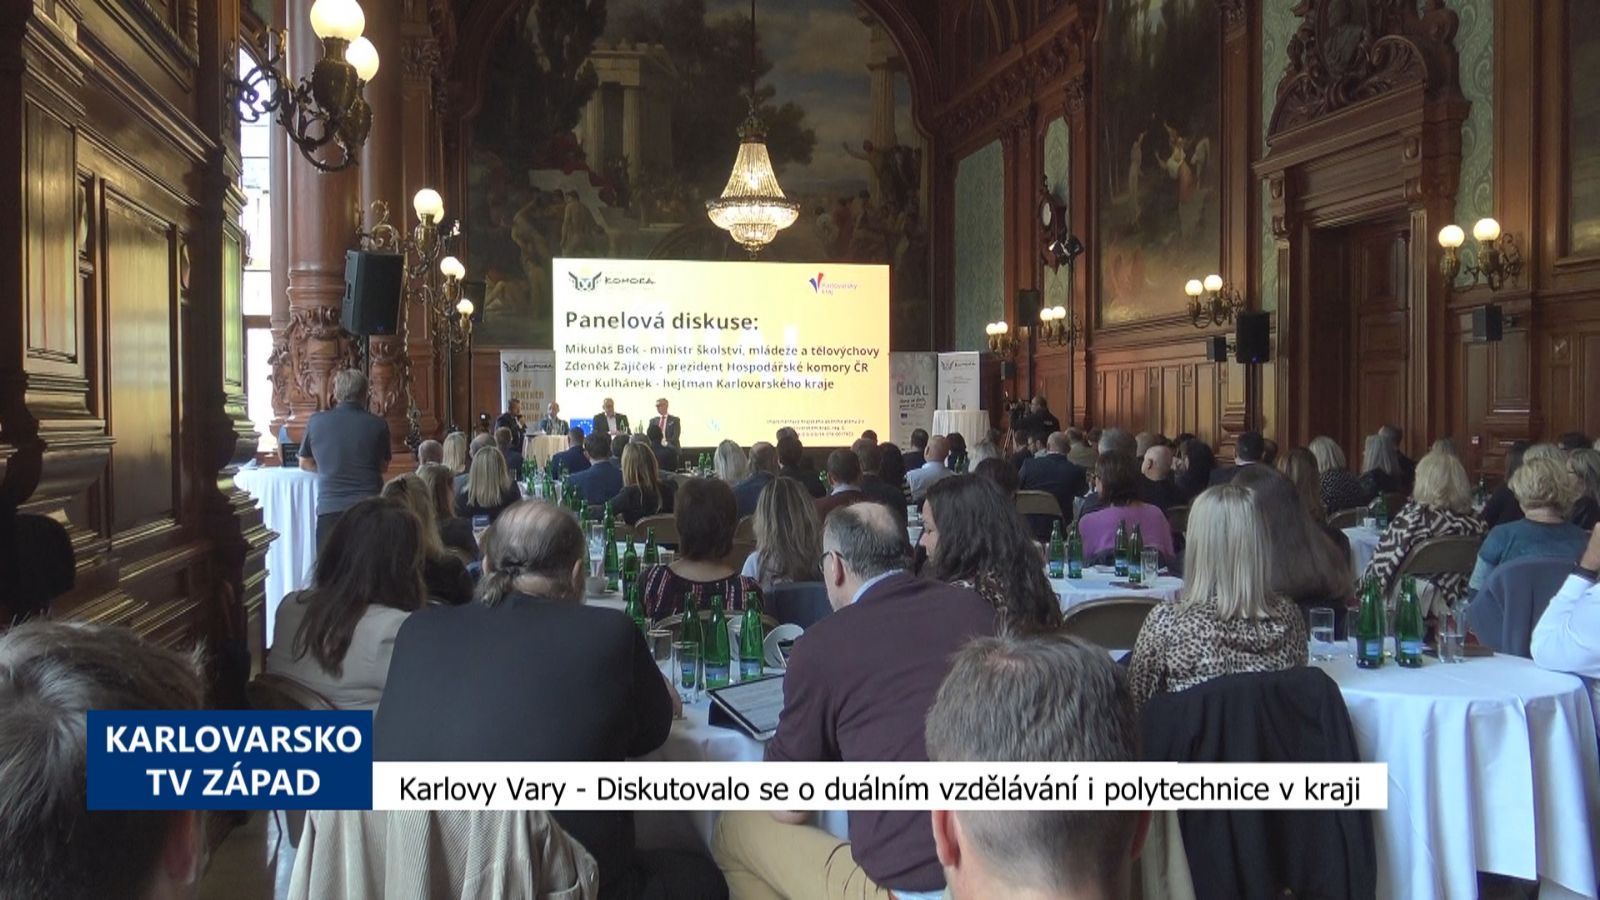 Karlovy Vary: Diskutovalo se o duálním vzdělávání i polytechnice v kraji (TV Západ)